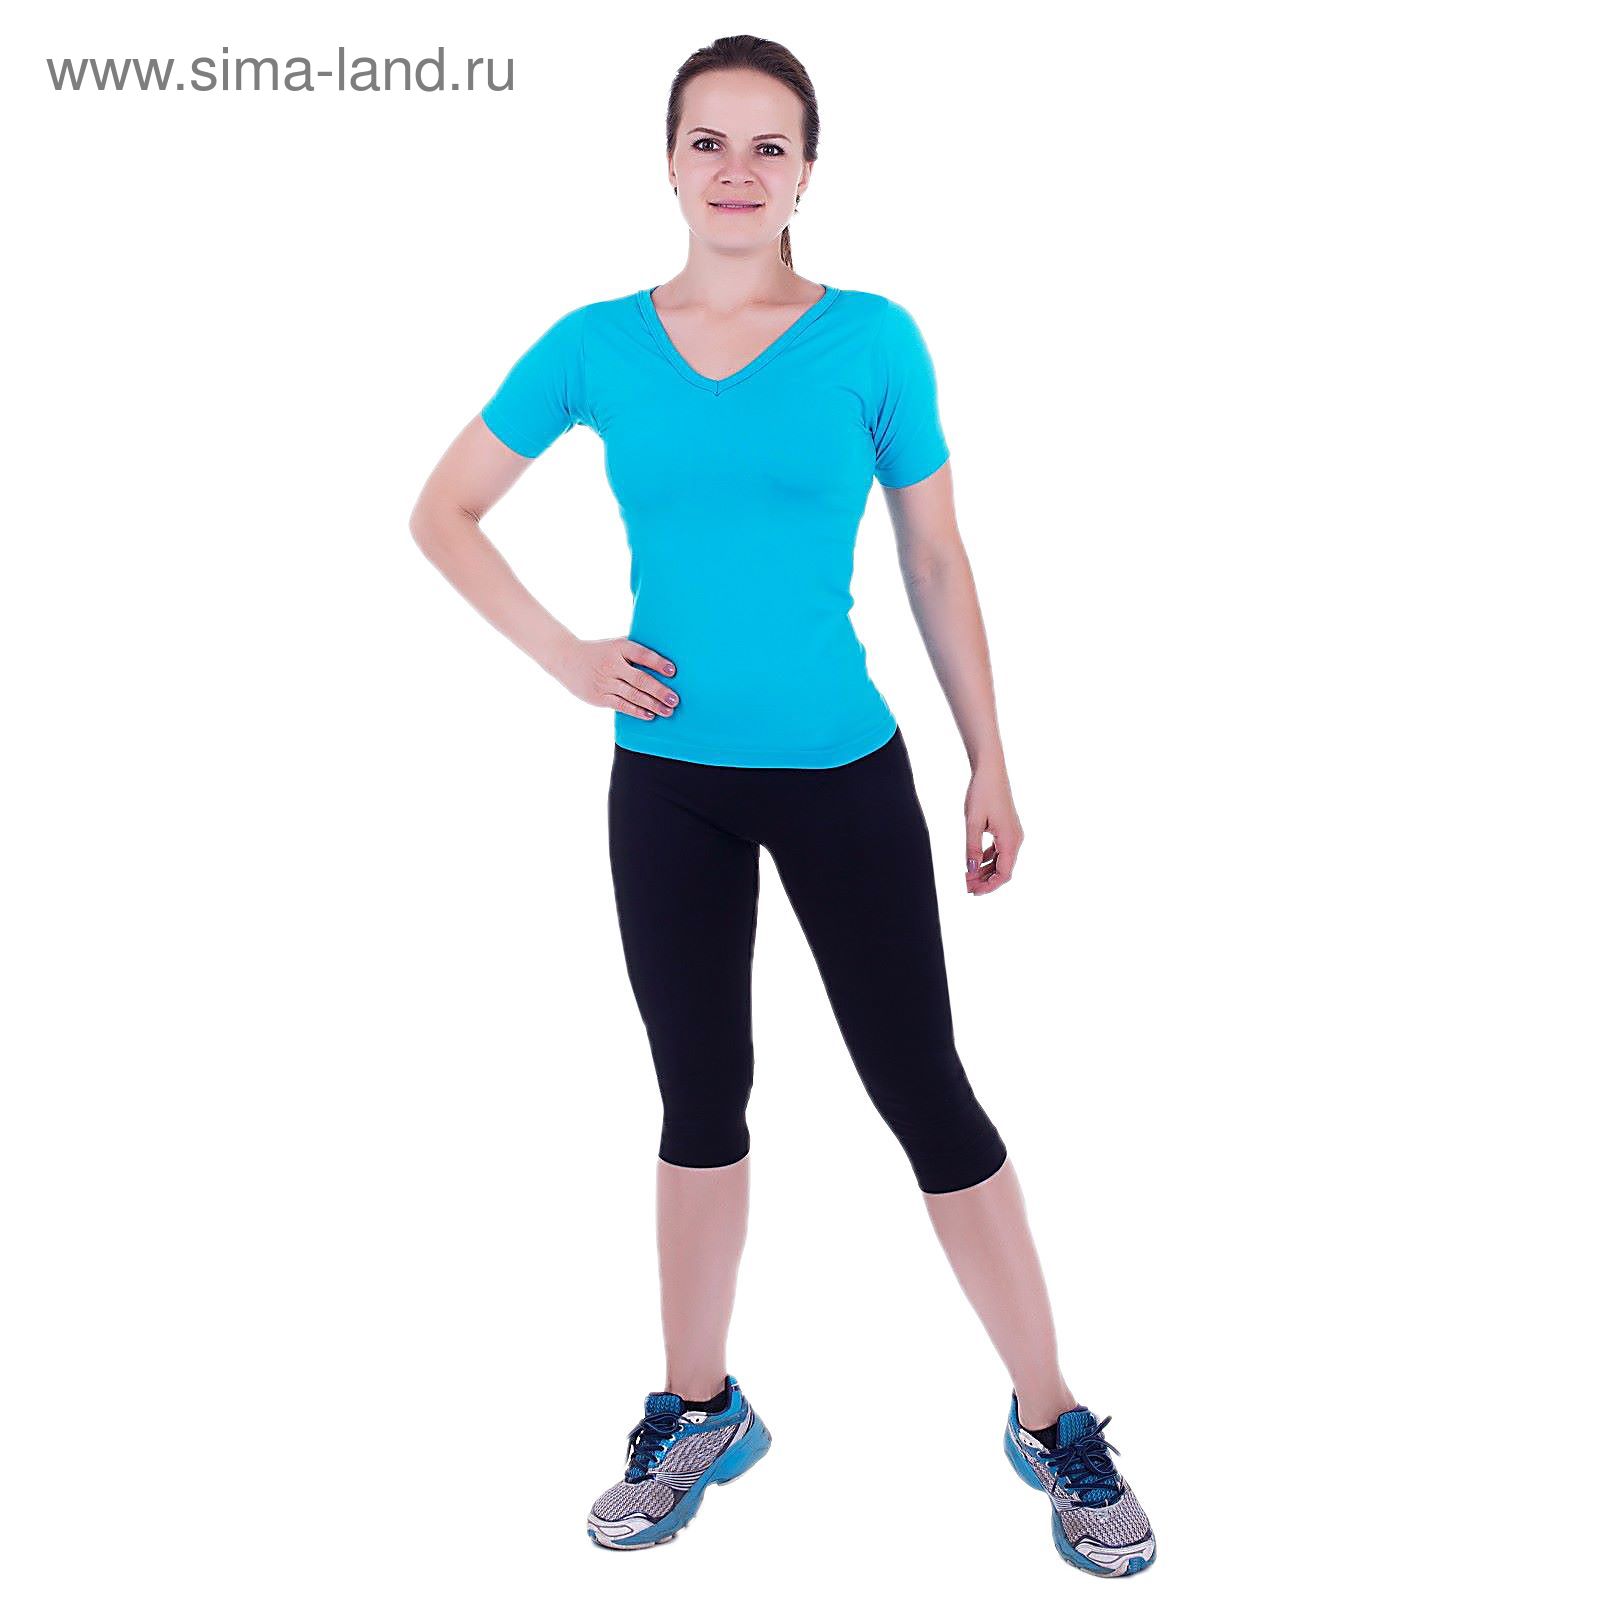 Спортивная футболка ONLITOP Balance blue, размер S-M (42-44)